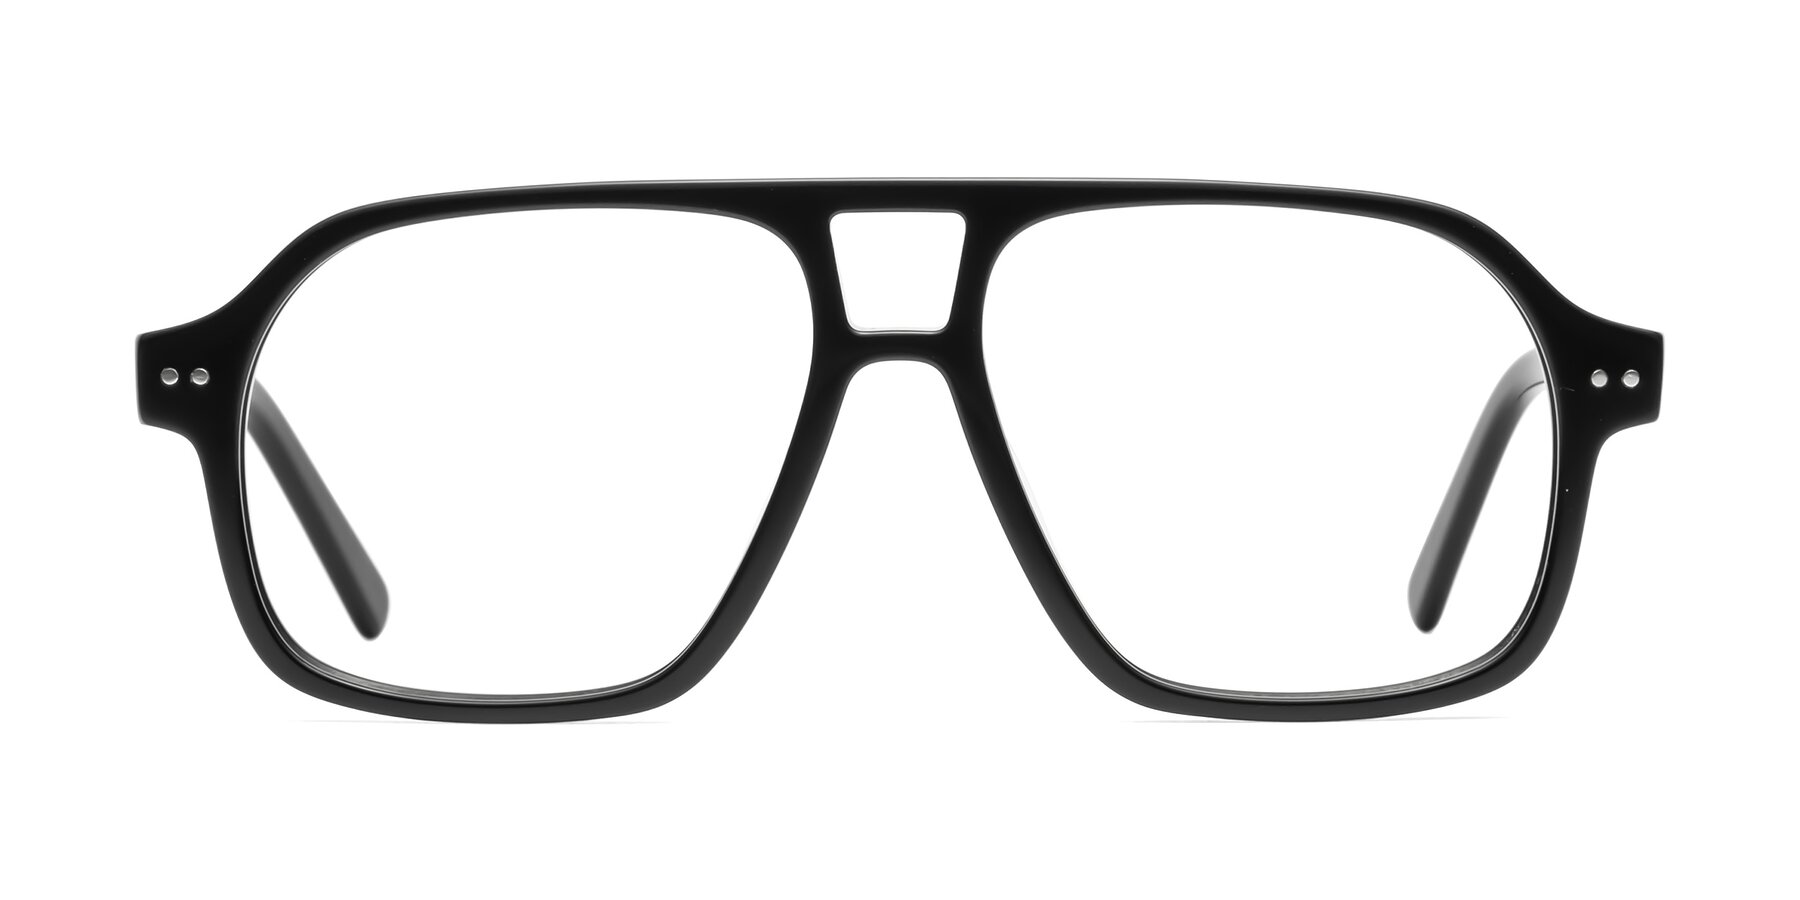 Kingston - Black Sunglasses Frame